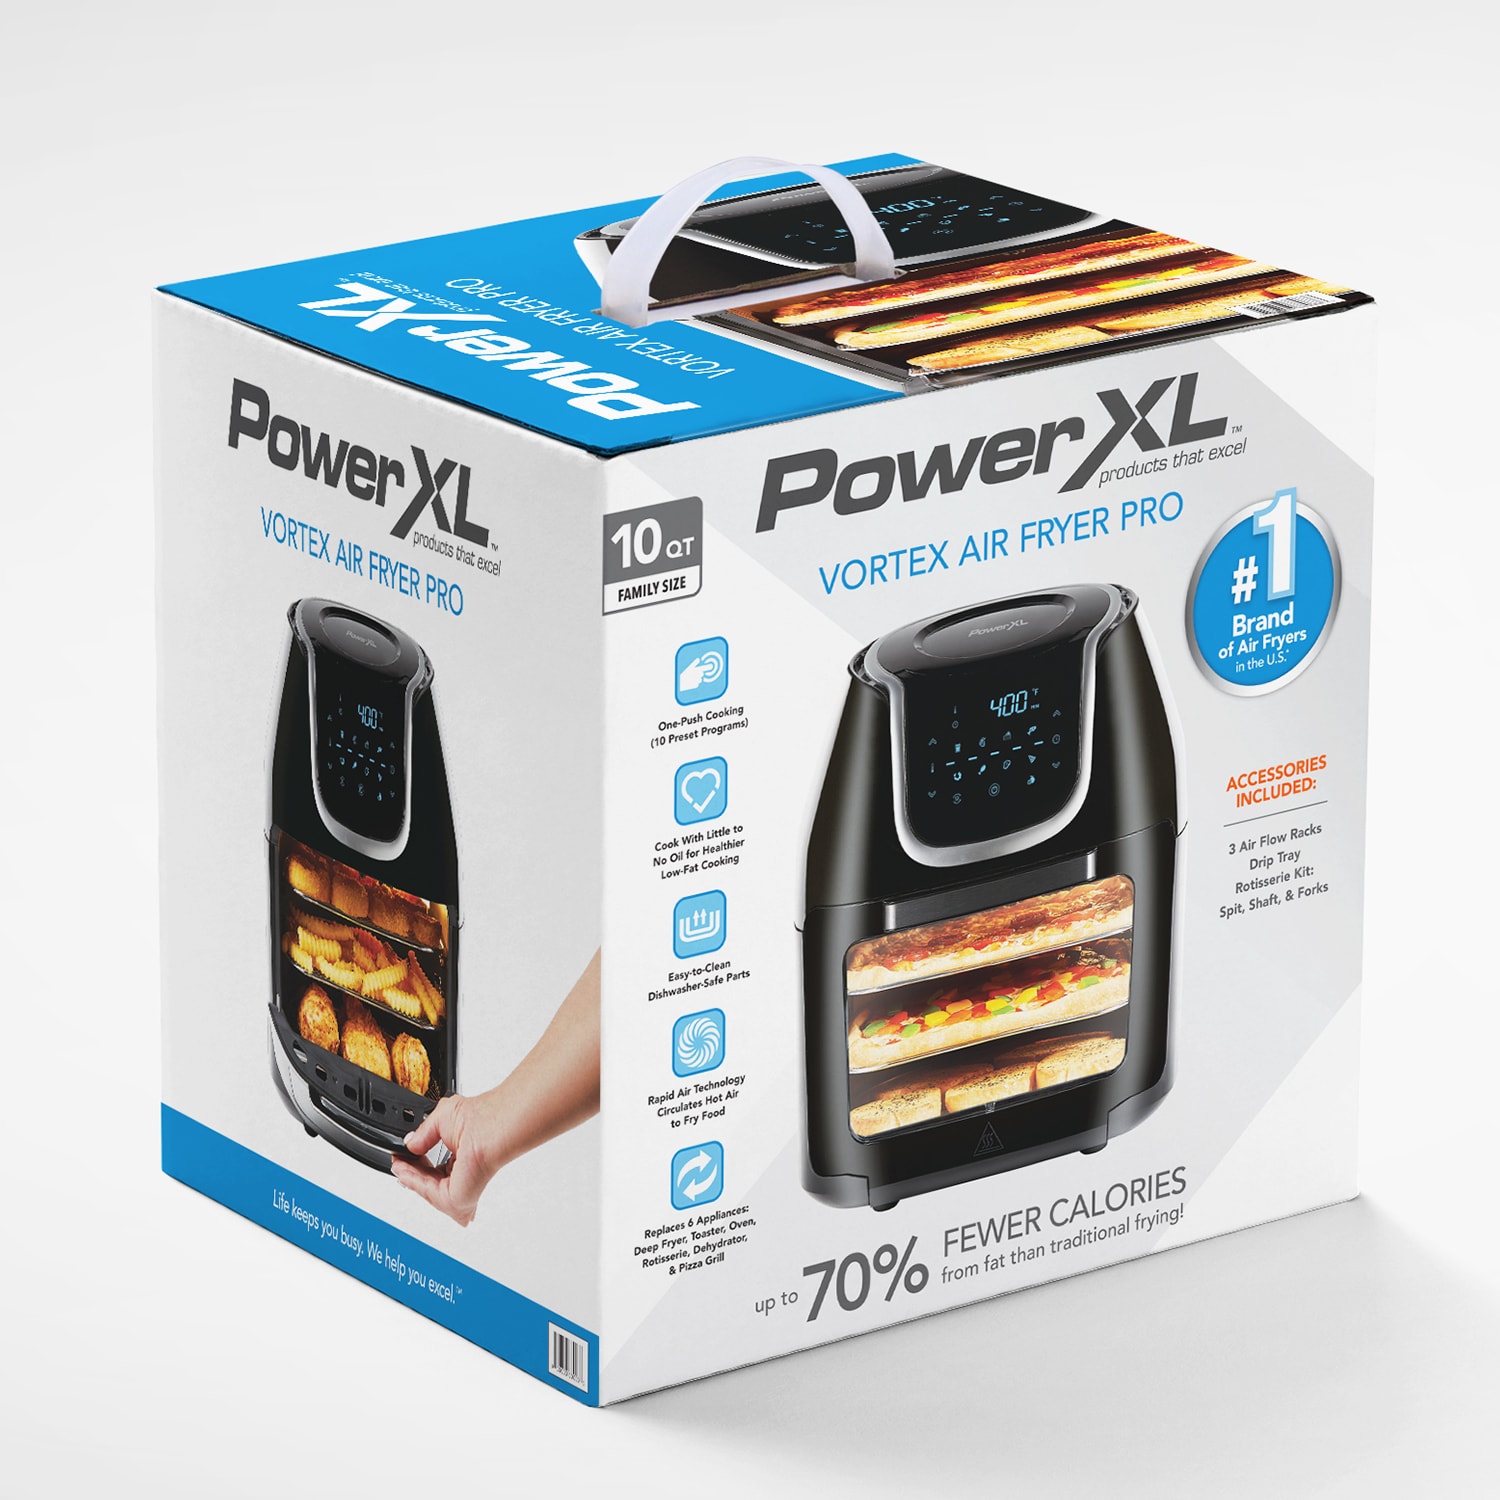 Power XL Vortex 10qt 1700w Air Fryer Pro Oven Unboxing plus first